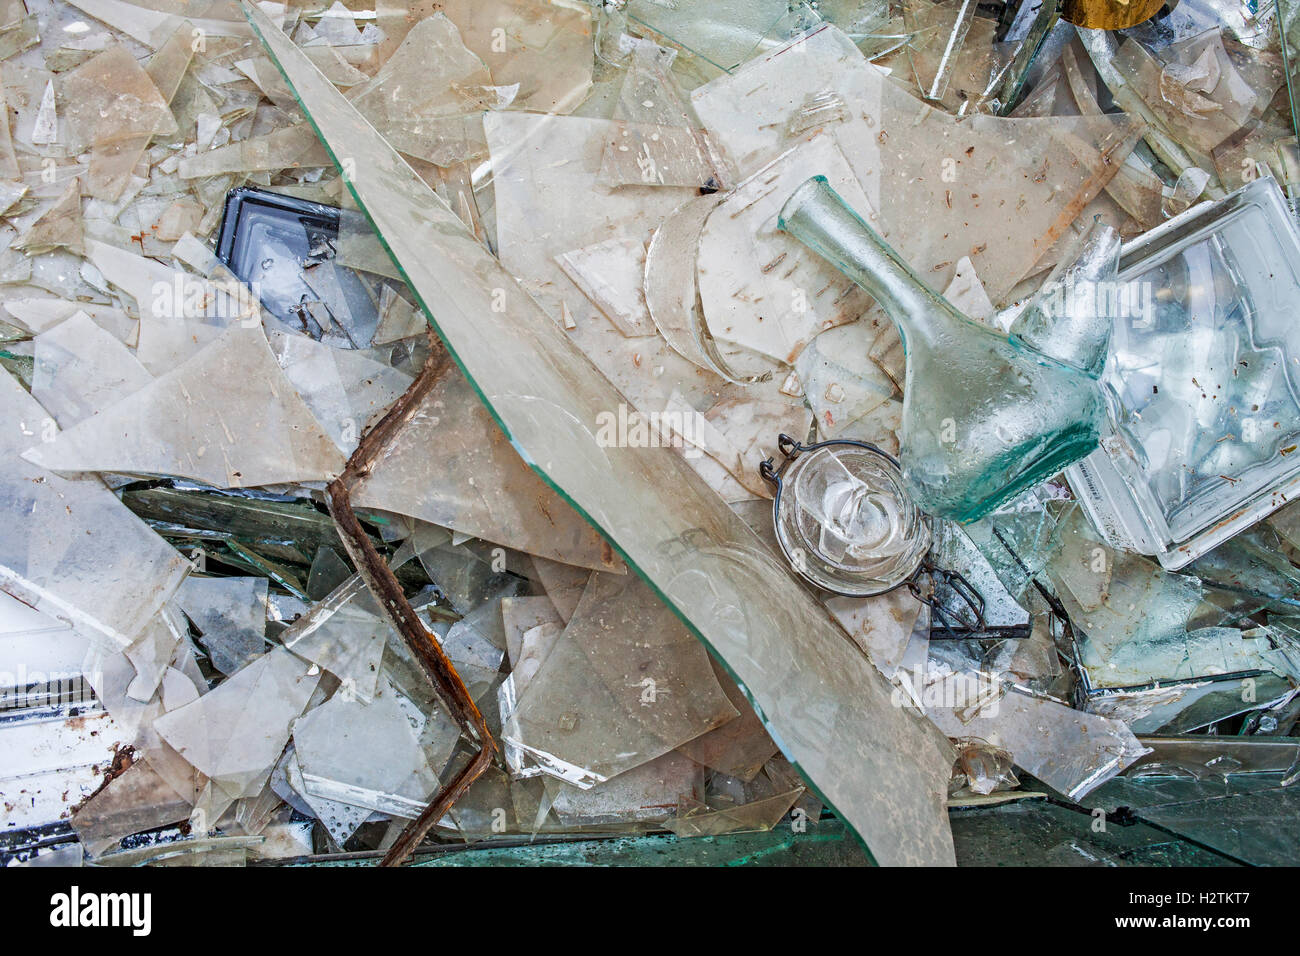 Almacenamiento de vidrio para reciclar, centro de reciclaje Foto de stock